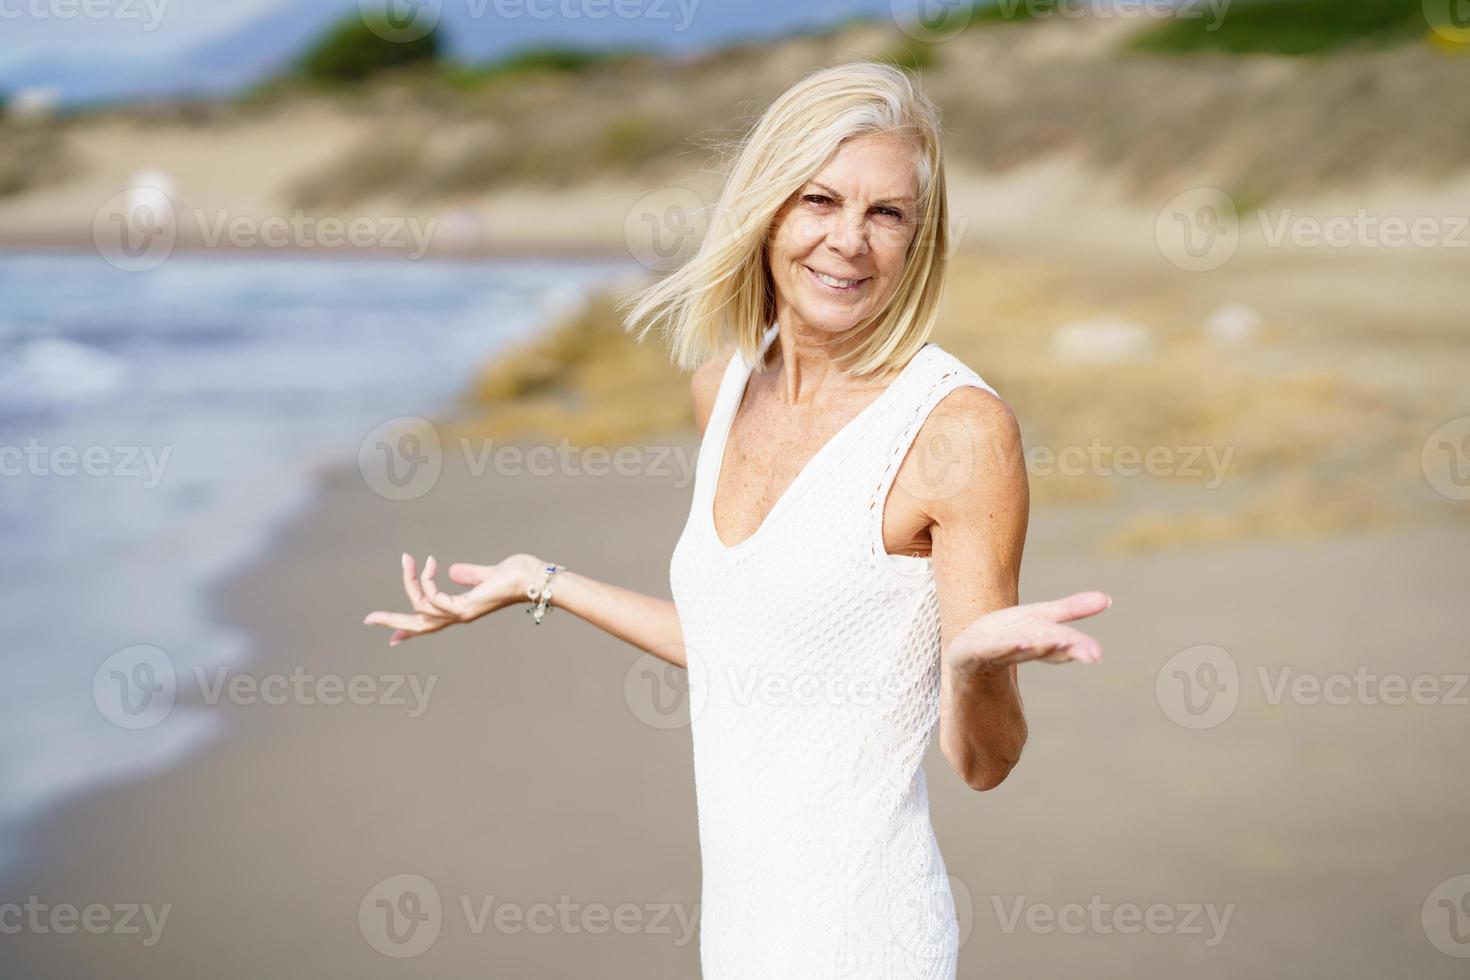 mulher madura sorridente caminhando na praia, passando seu tempo de lazer, aproveitando seu tempo livre foto